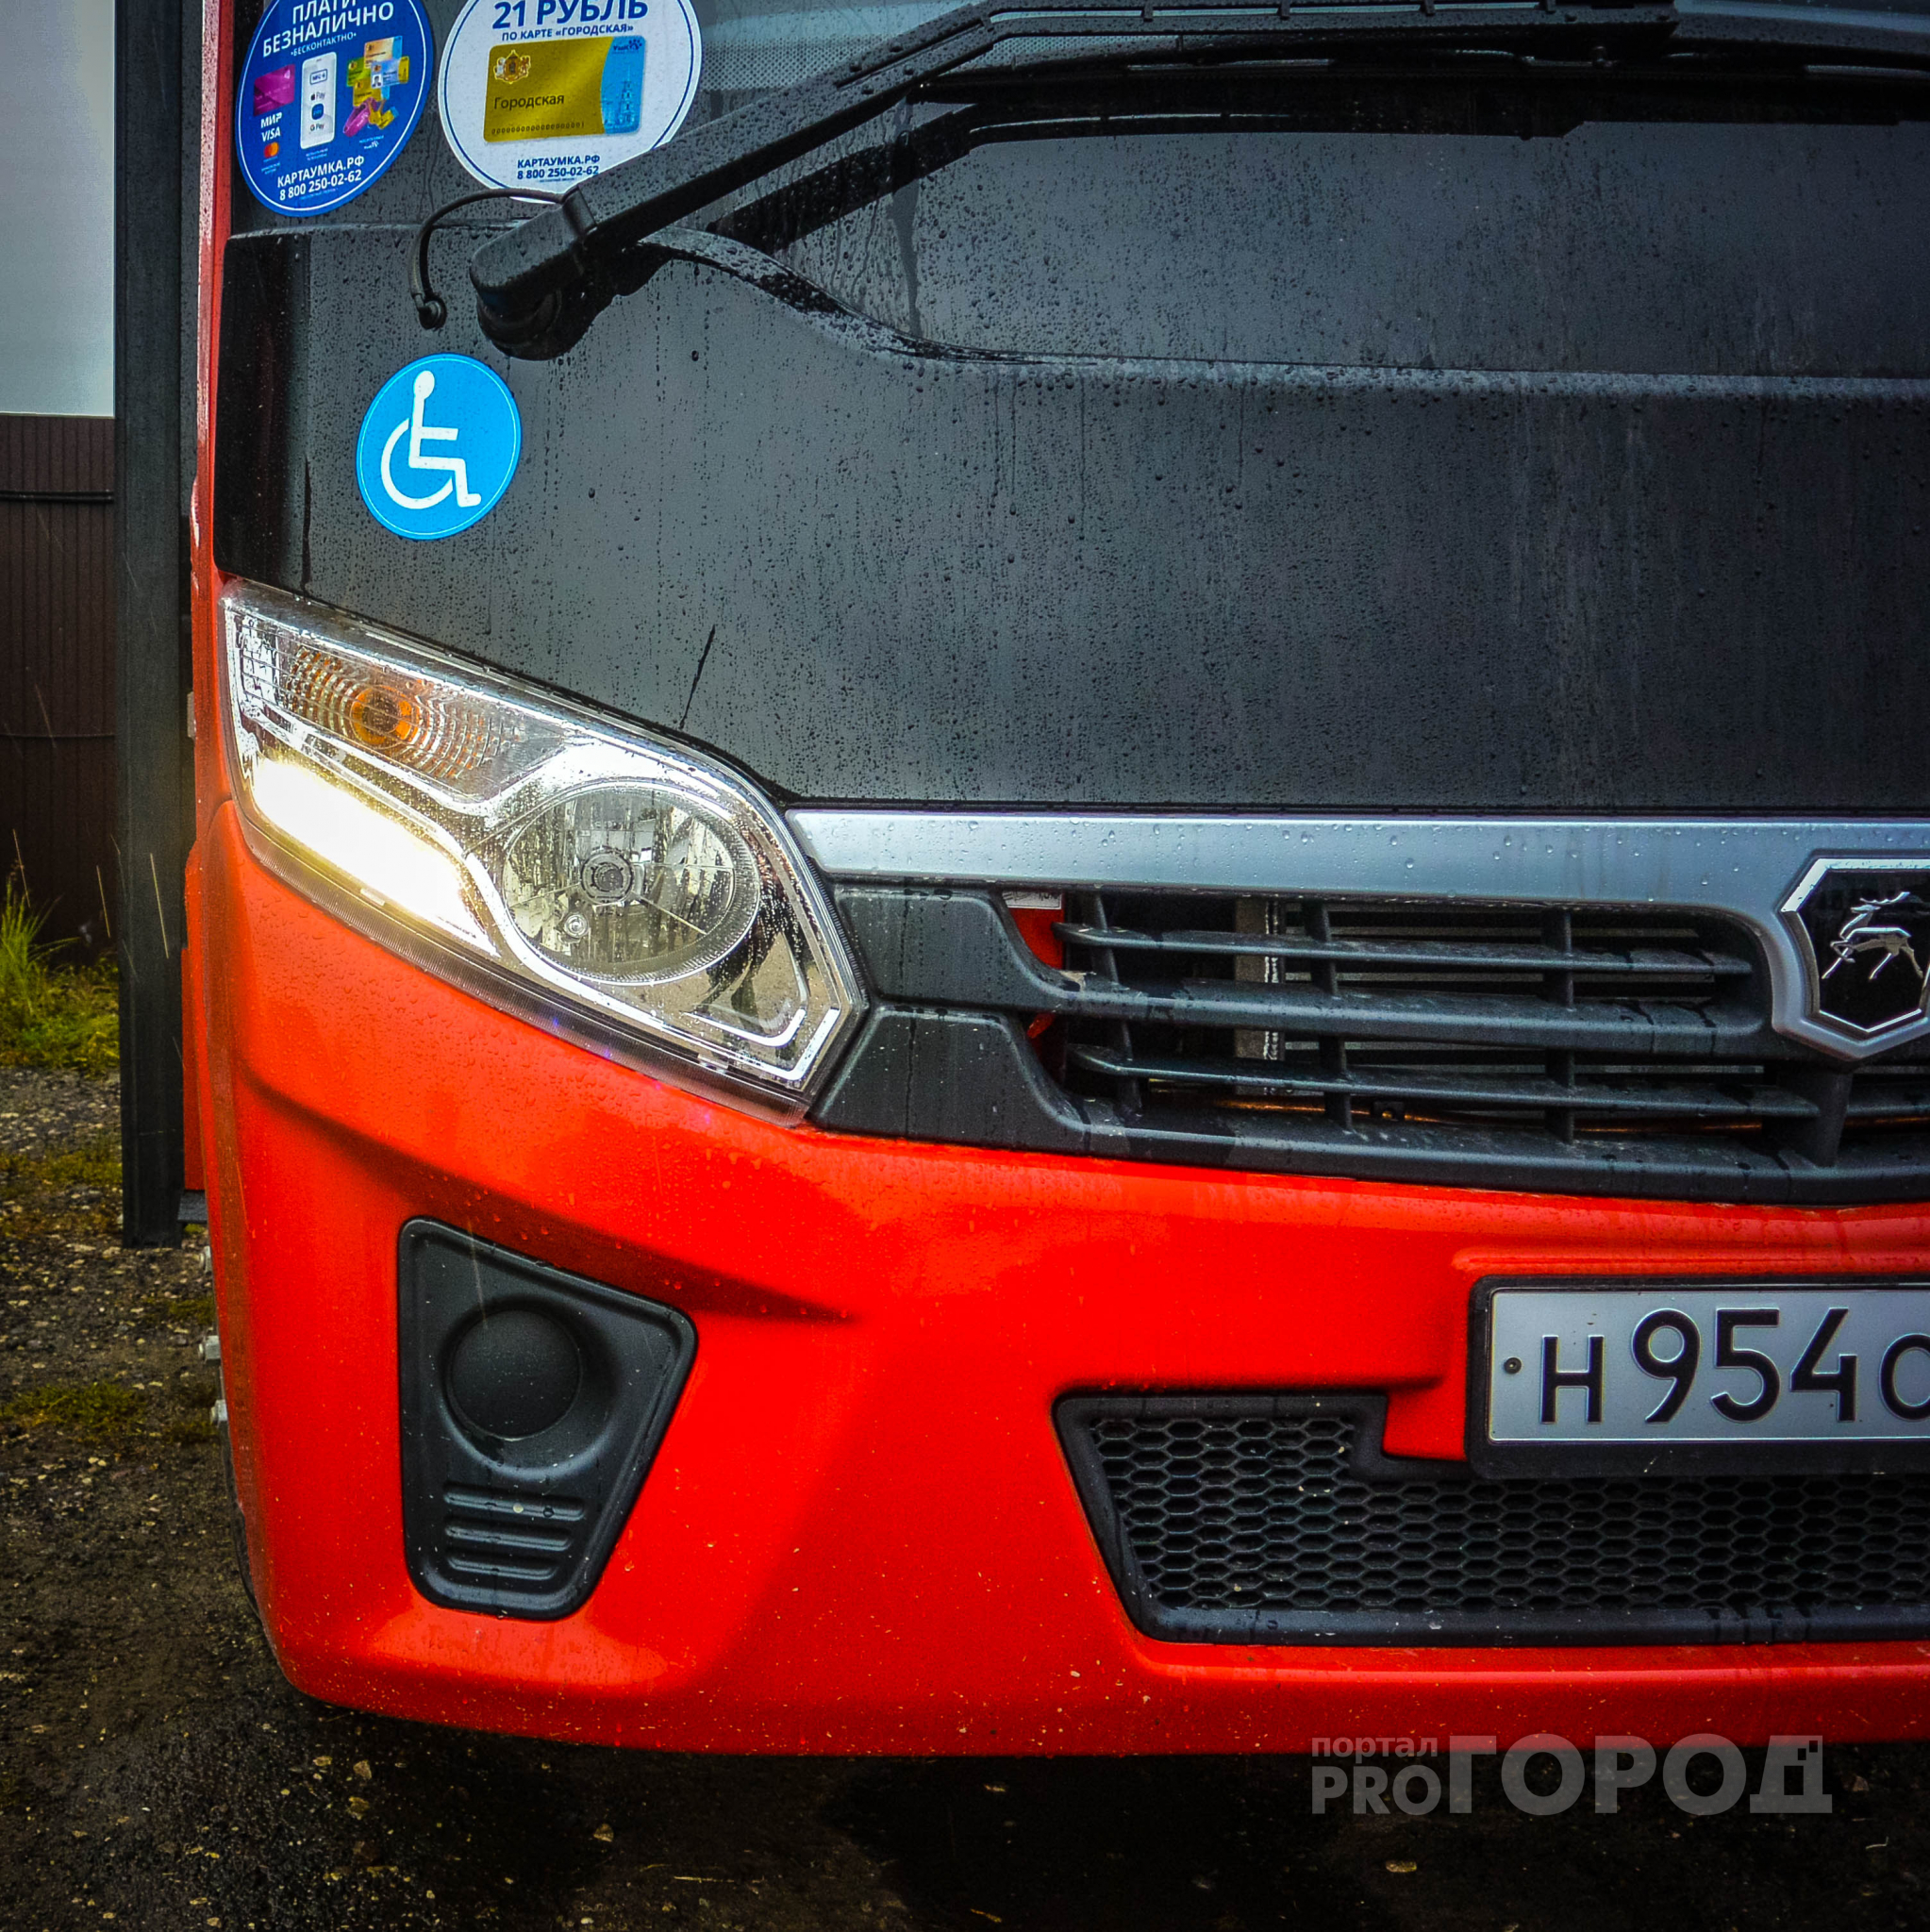 Красные автобусы: оказывается транспорт в Рязани может быть комфортным и прибыльным